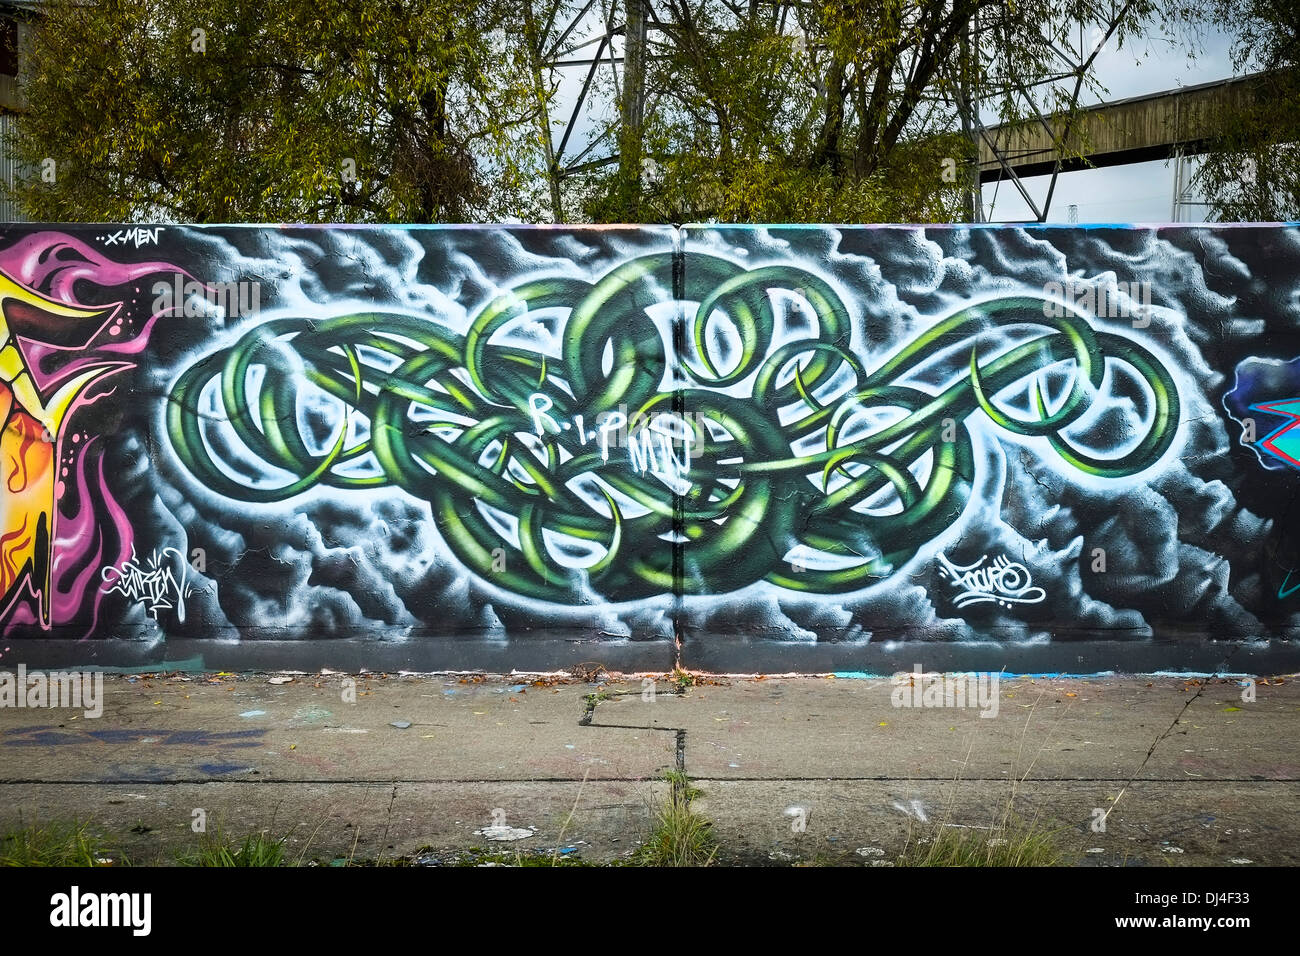 Graffiti on a wall. Stock Photo